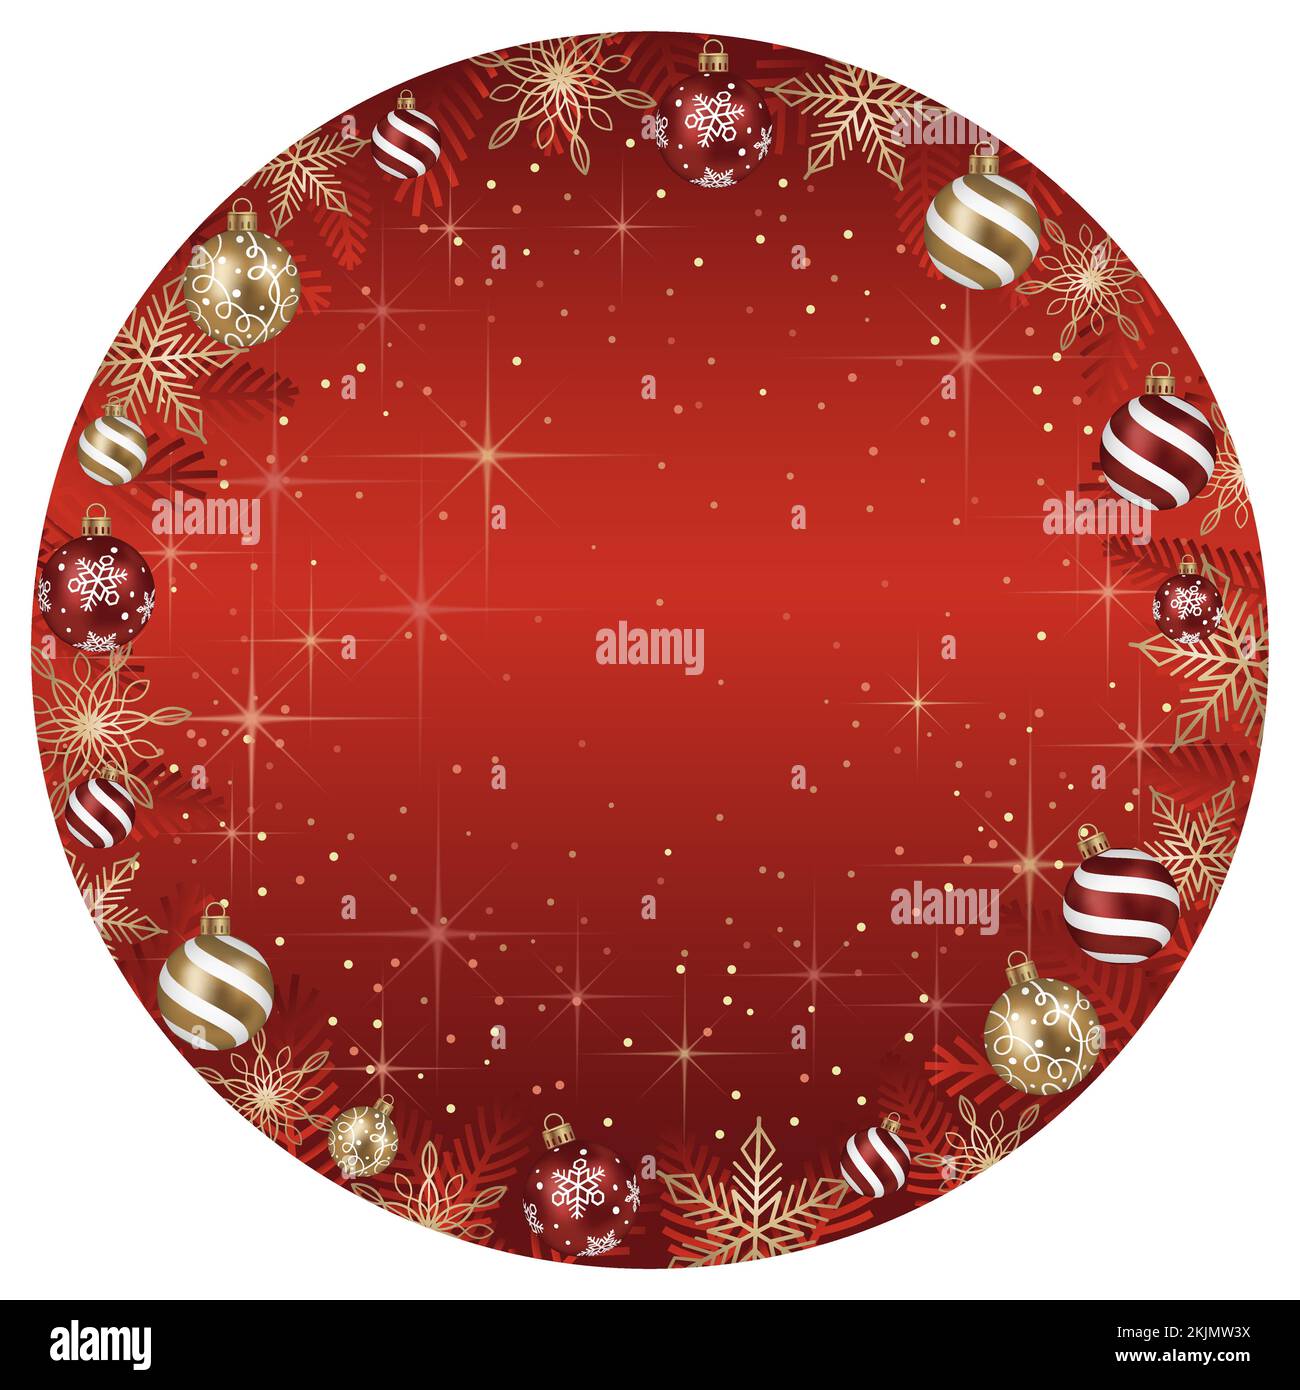 Abstrakte Vektordarstellung mit runden Rahmen und Weihnachtsbällen und leuchtendem roten Hintergrund isoliert auf weißem Hintergrund. Stock Vektor